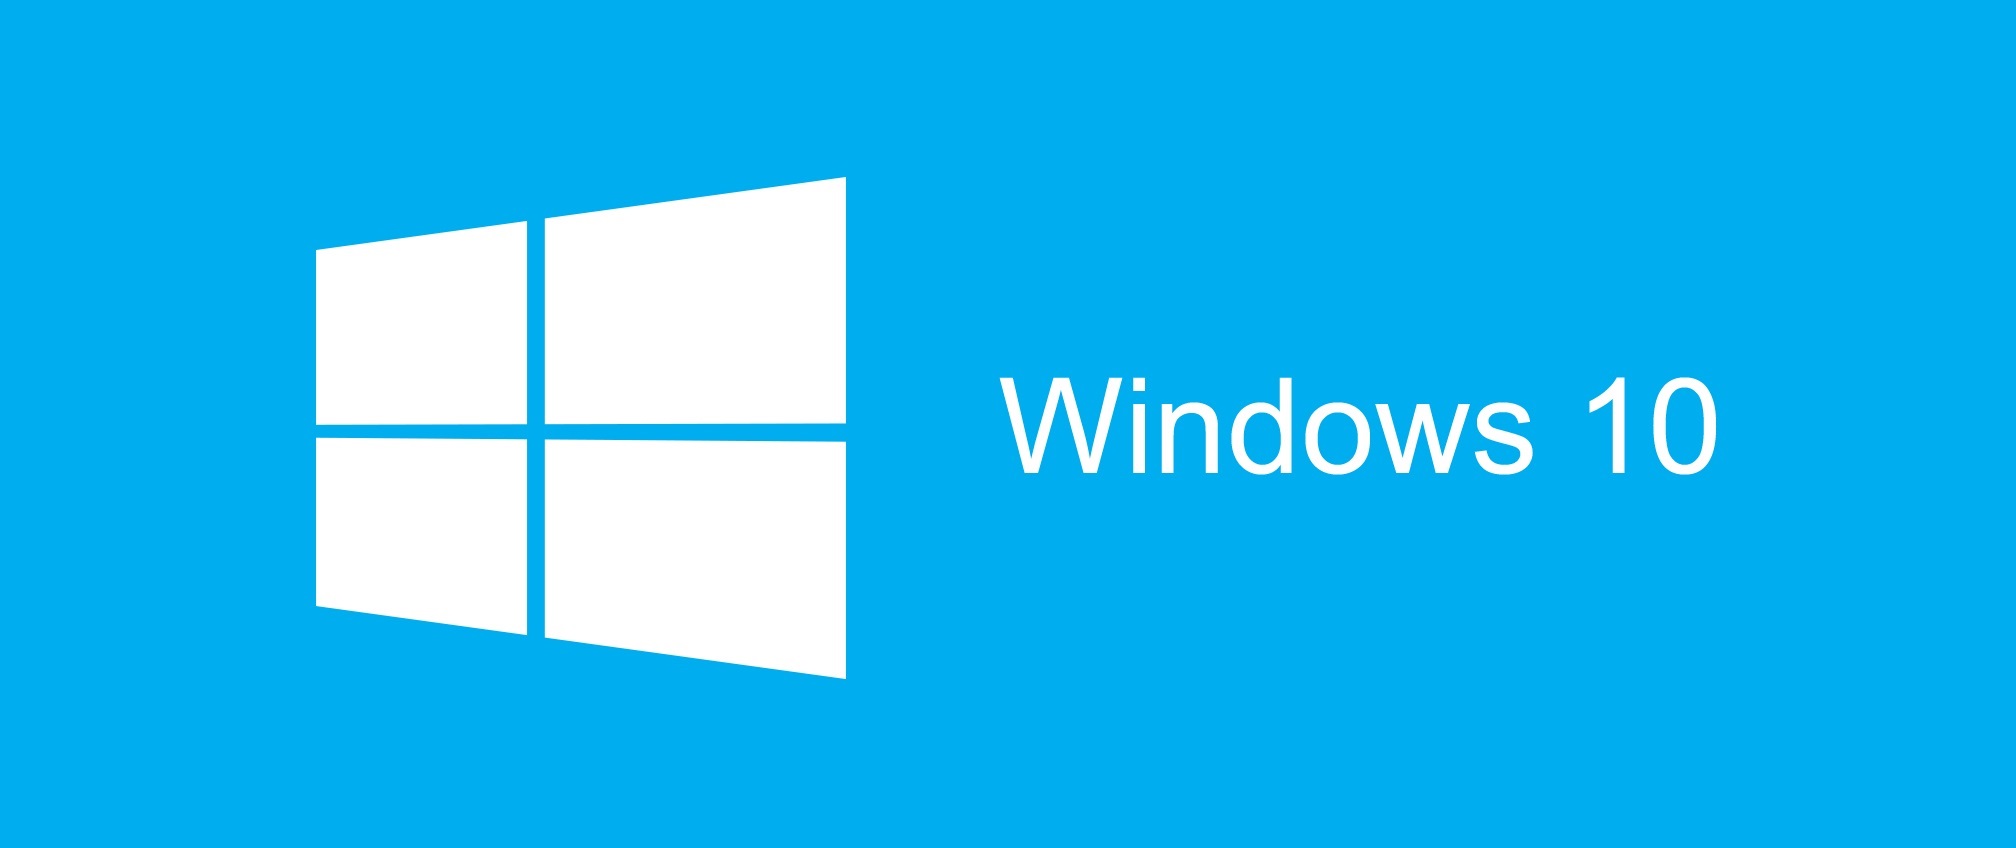 Windows 10 je ešte lepší. Ako naň prejsť zadarmo?